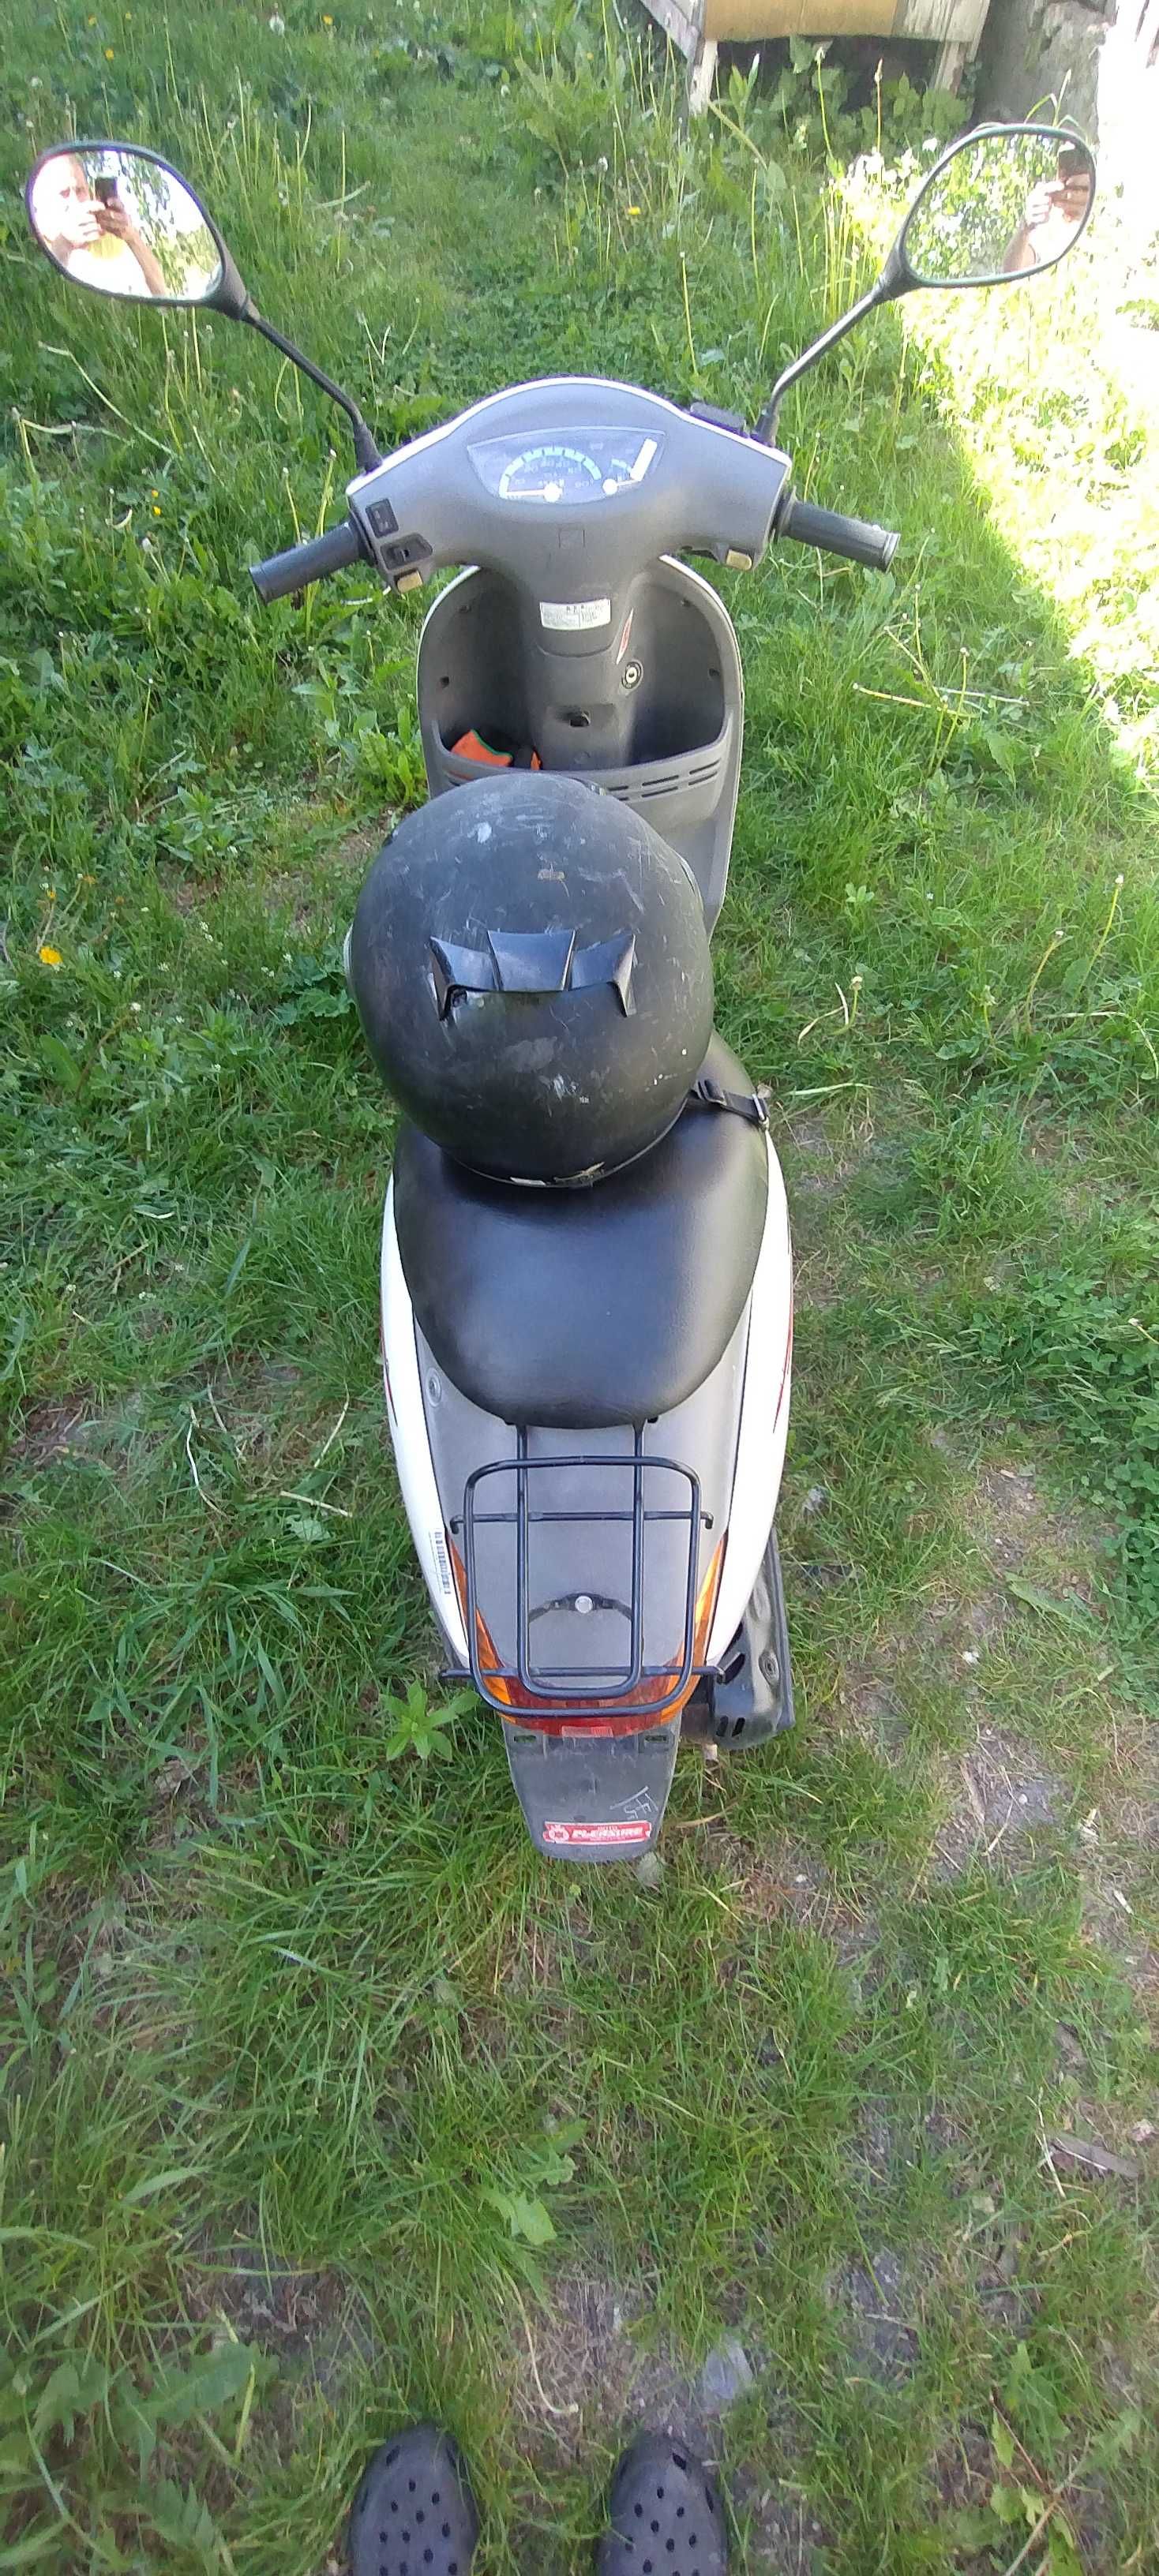 Скутер Honda tact